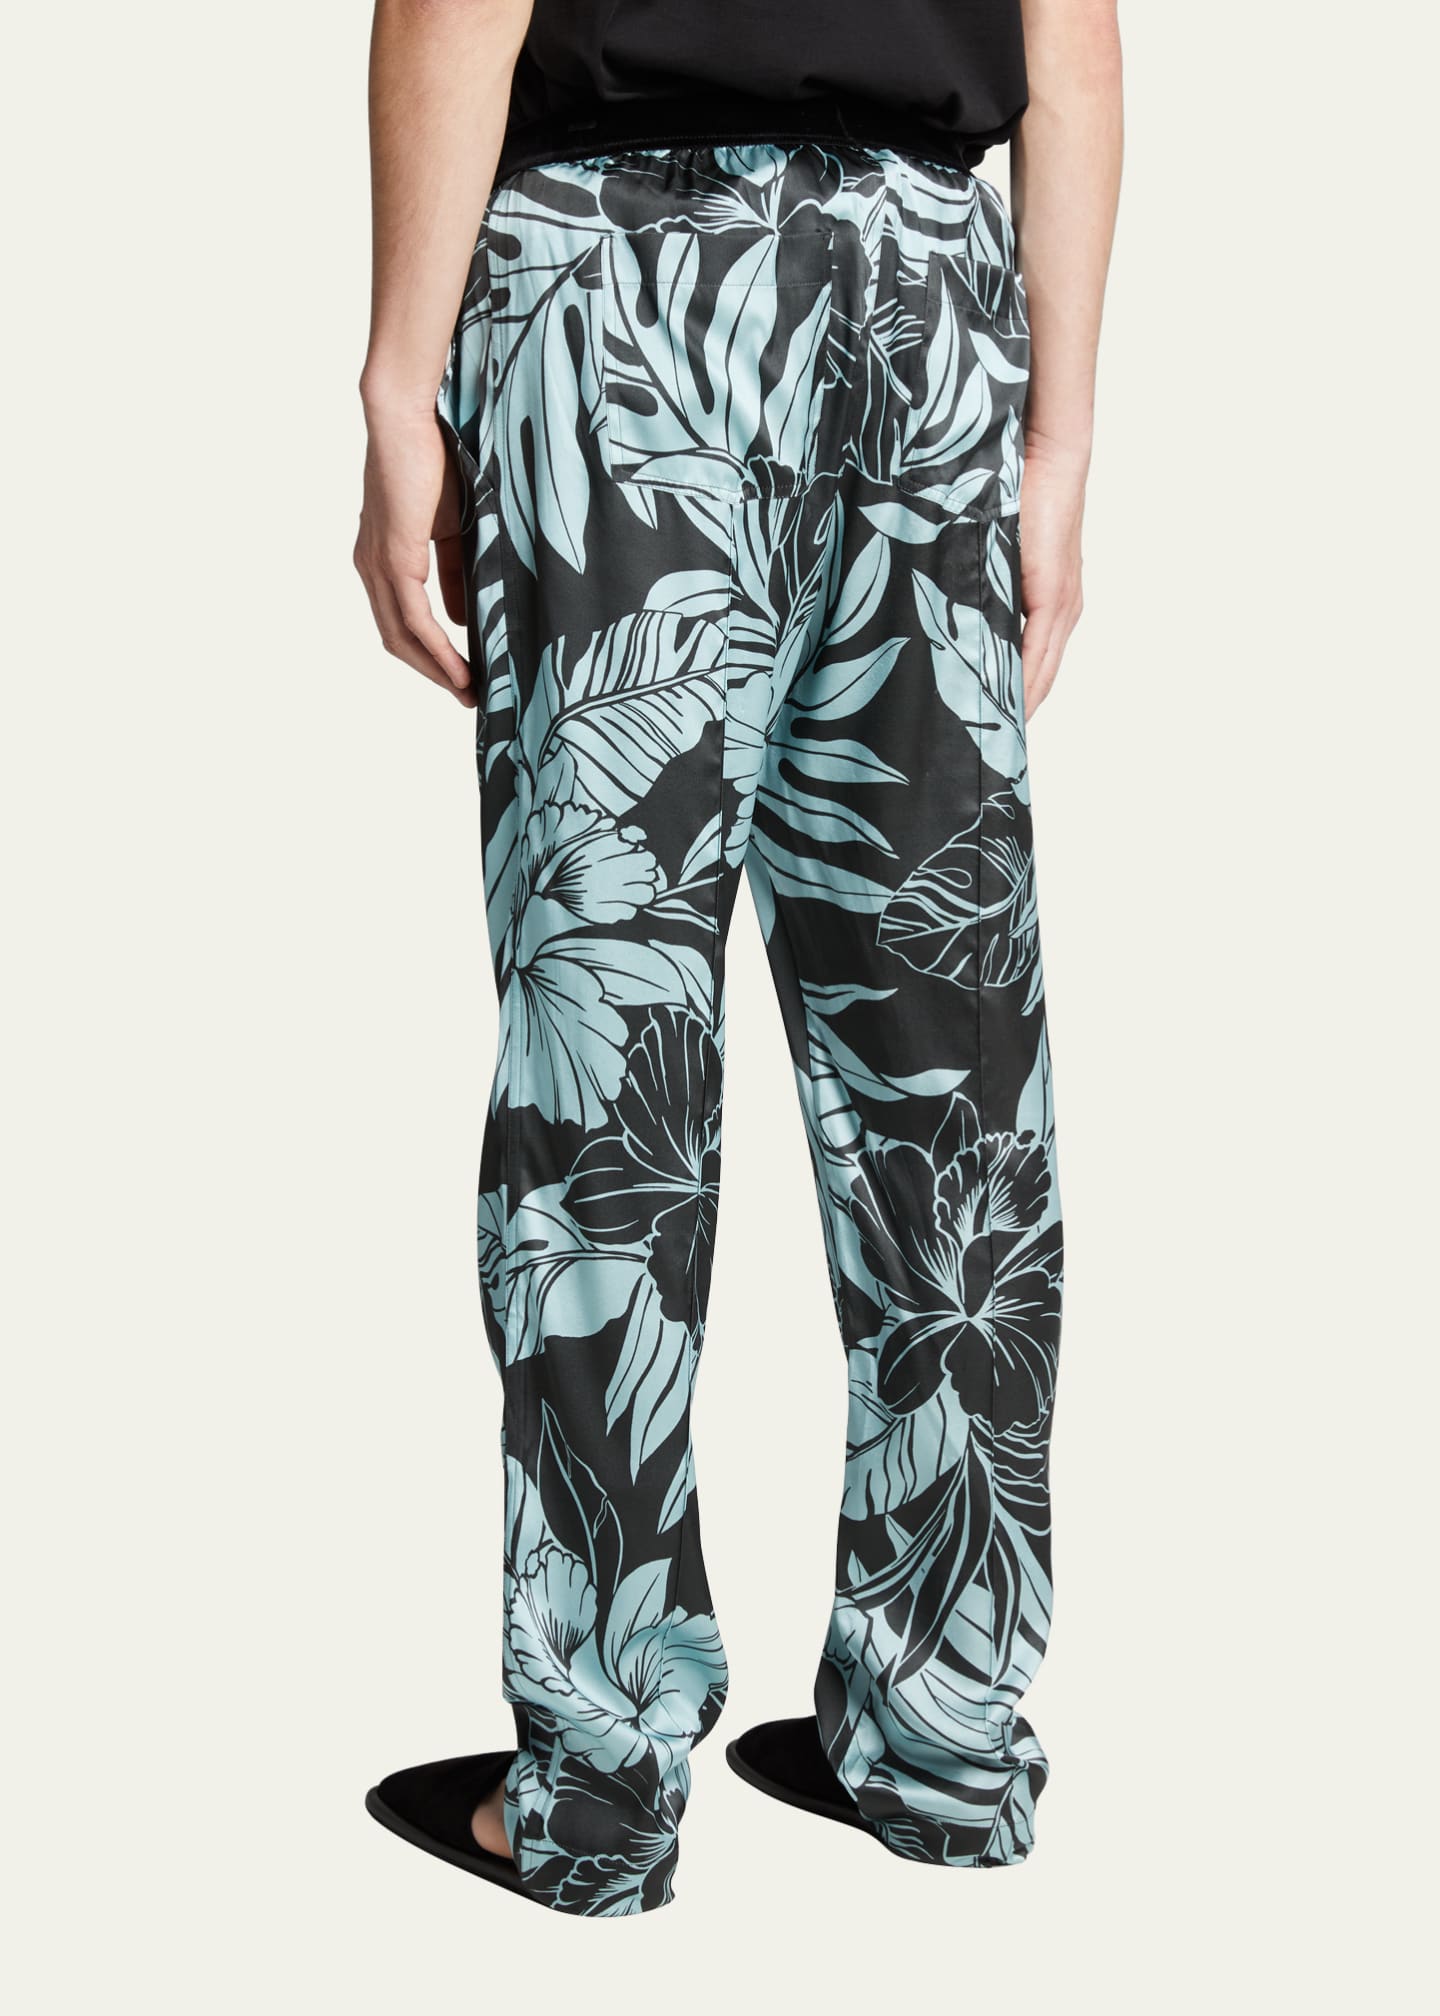 TOM FORD Men's Printed Silk Pajama Pants - Bergdorf Goodman